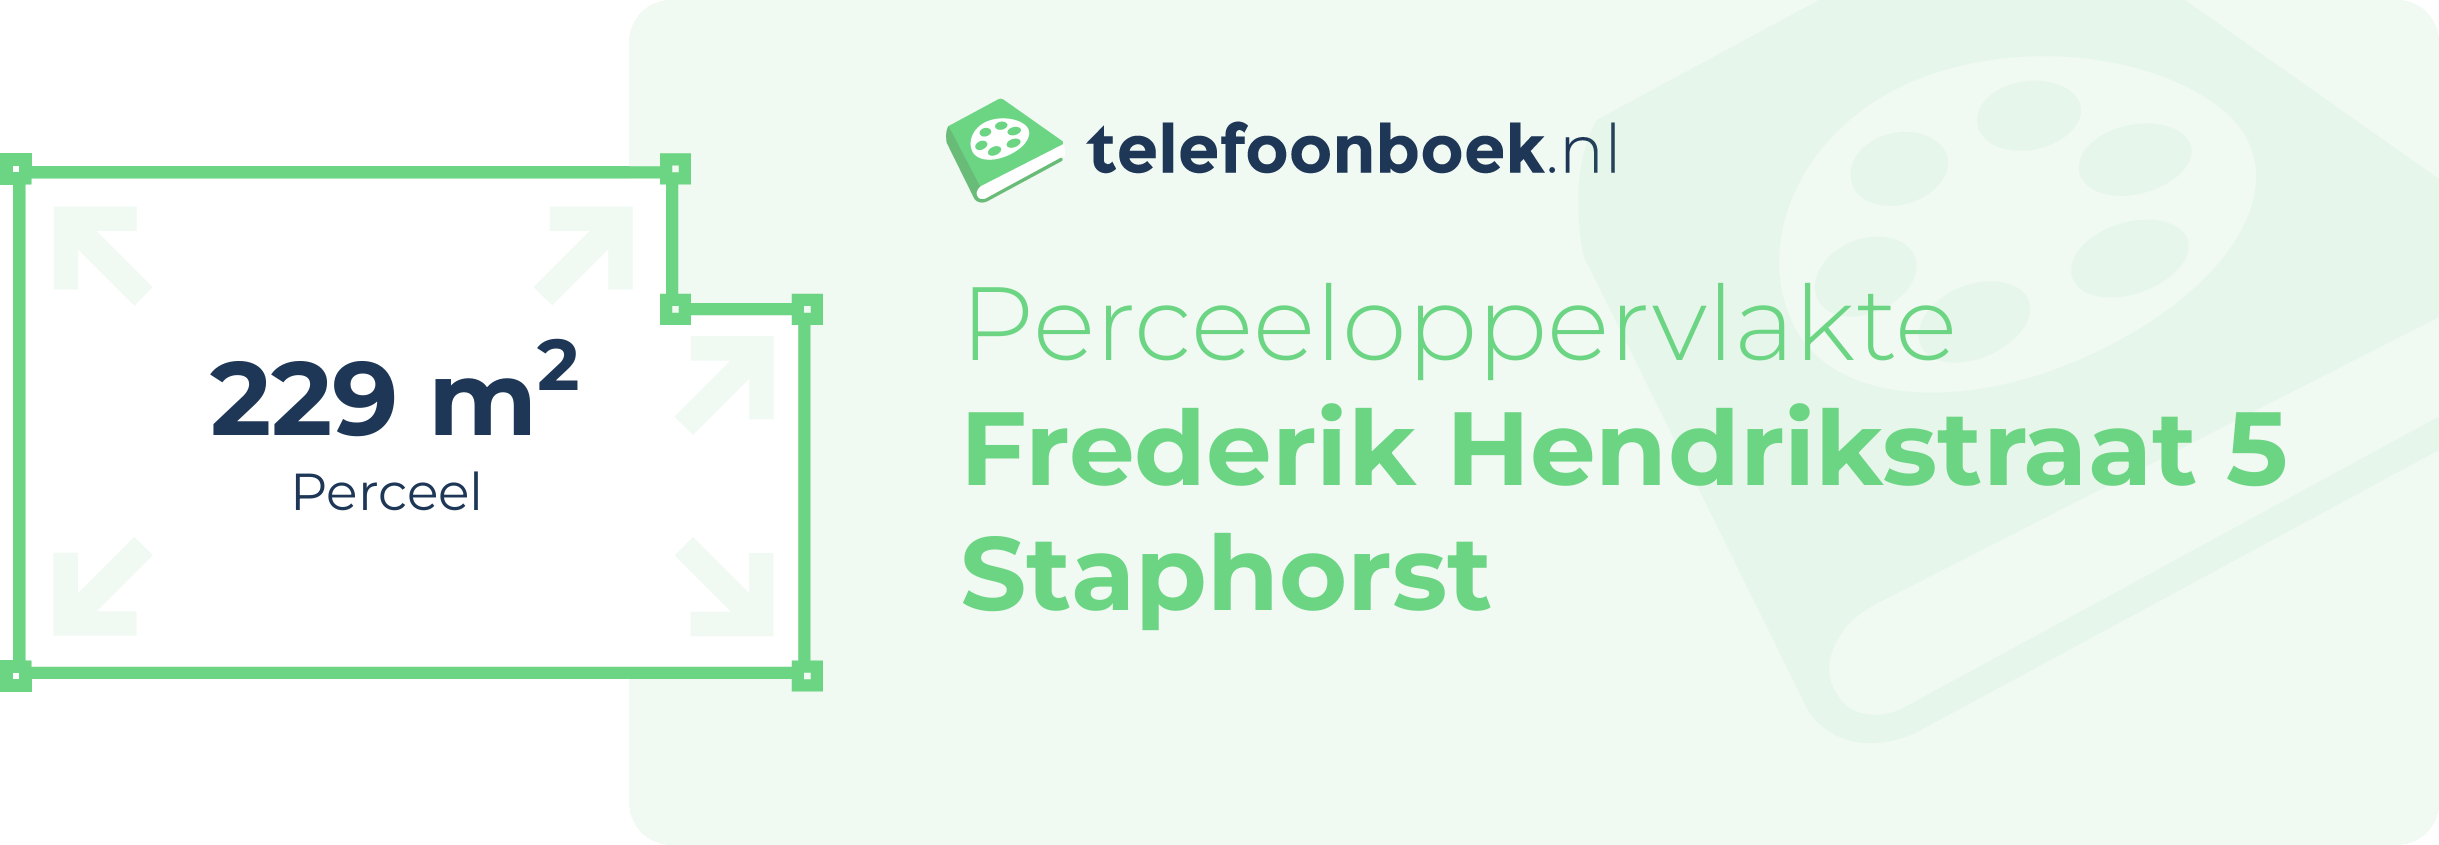 Perceeloppervlakte Frederik Hendrikstraat 5 Staphorst